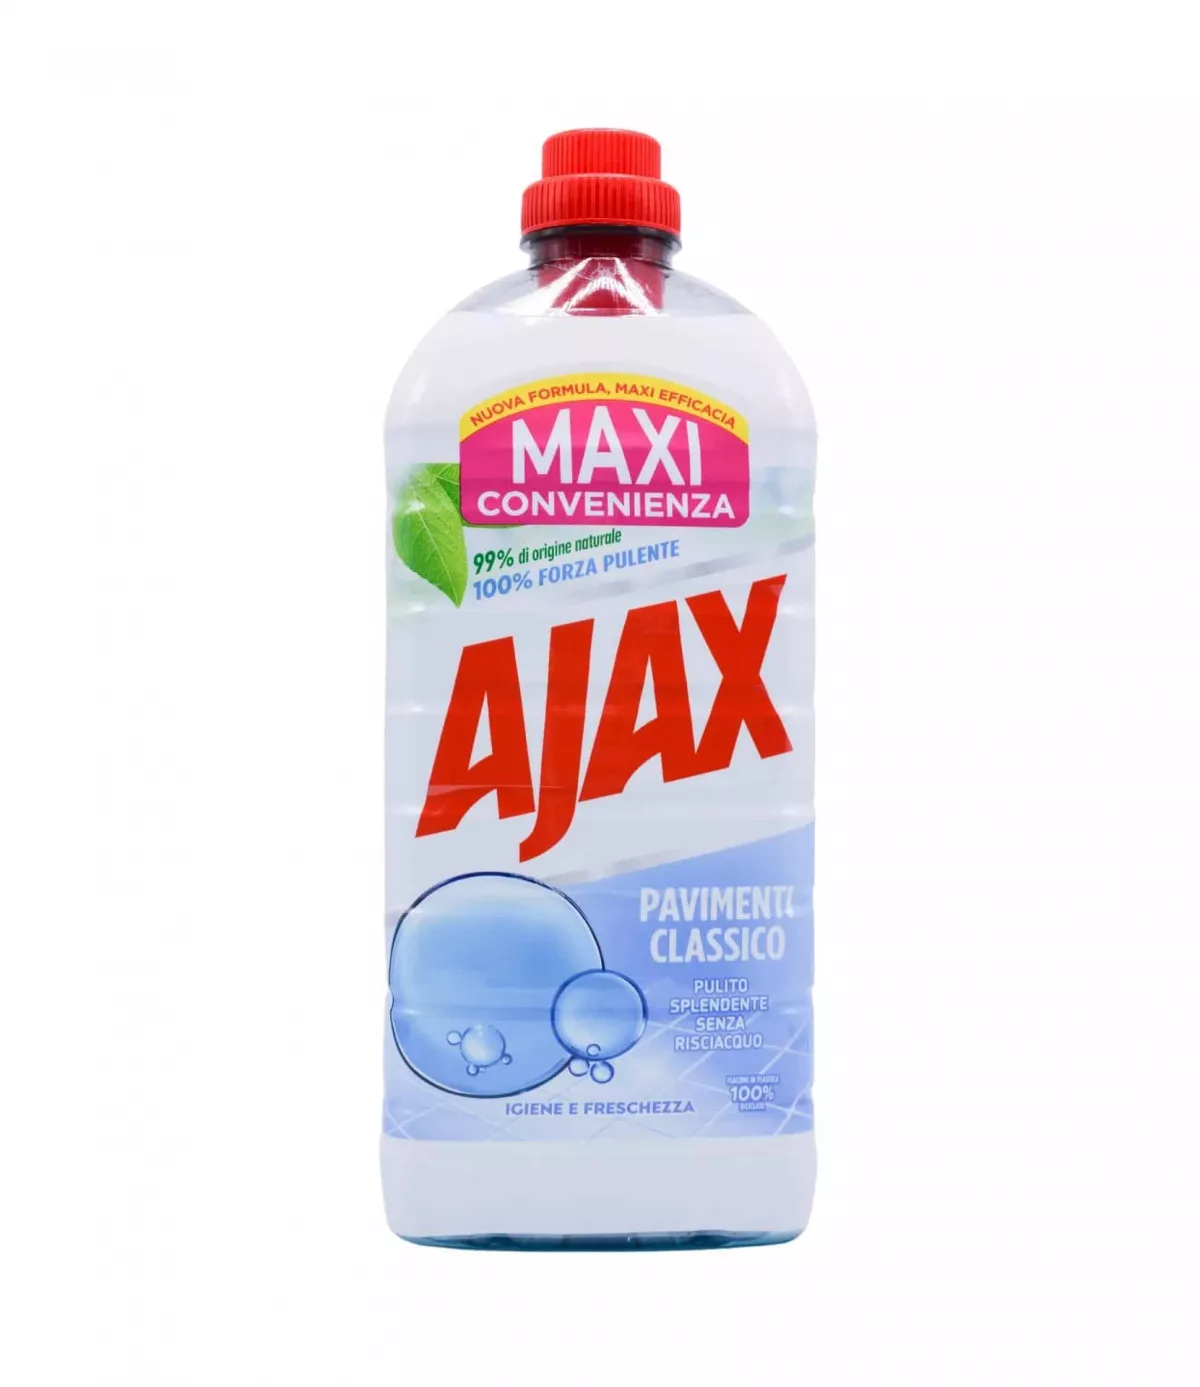 Detergent Gresie Ajax Classico